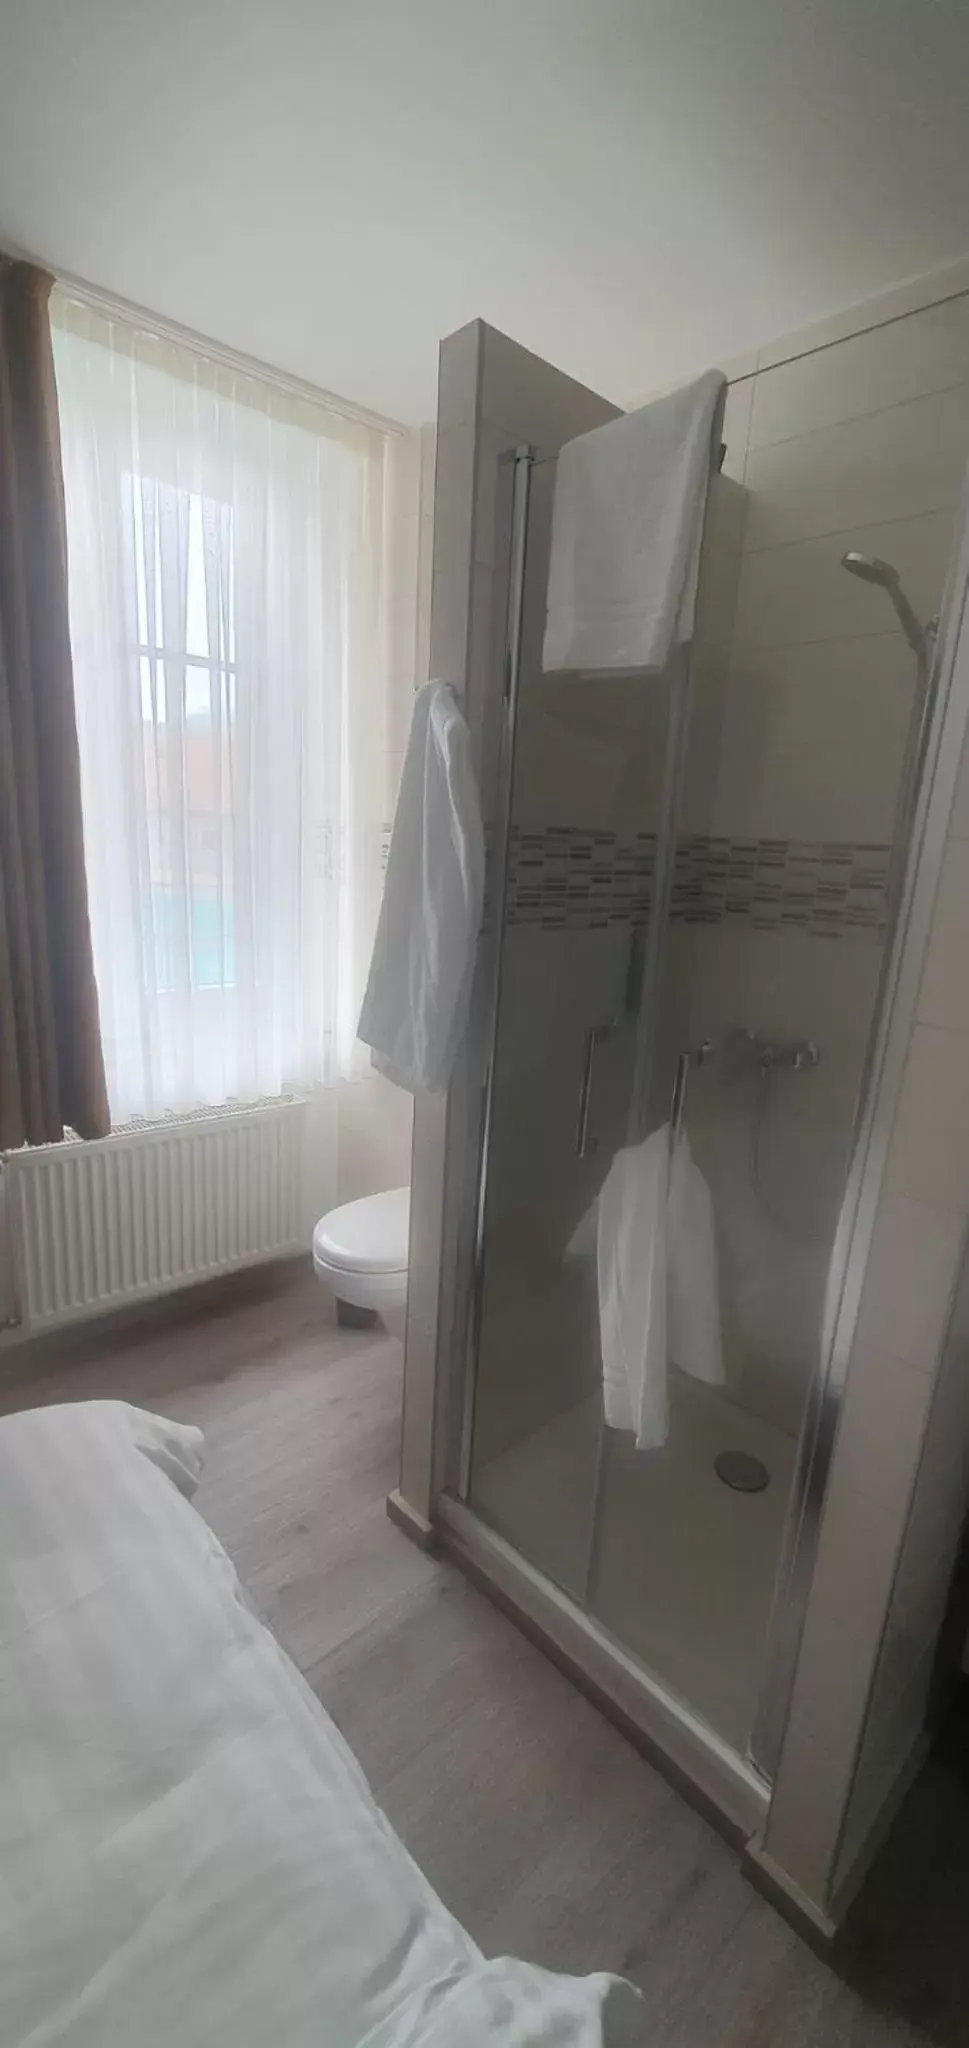 Bathroom in Hotel de France